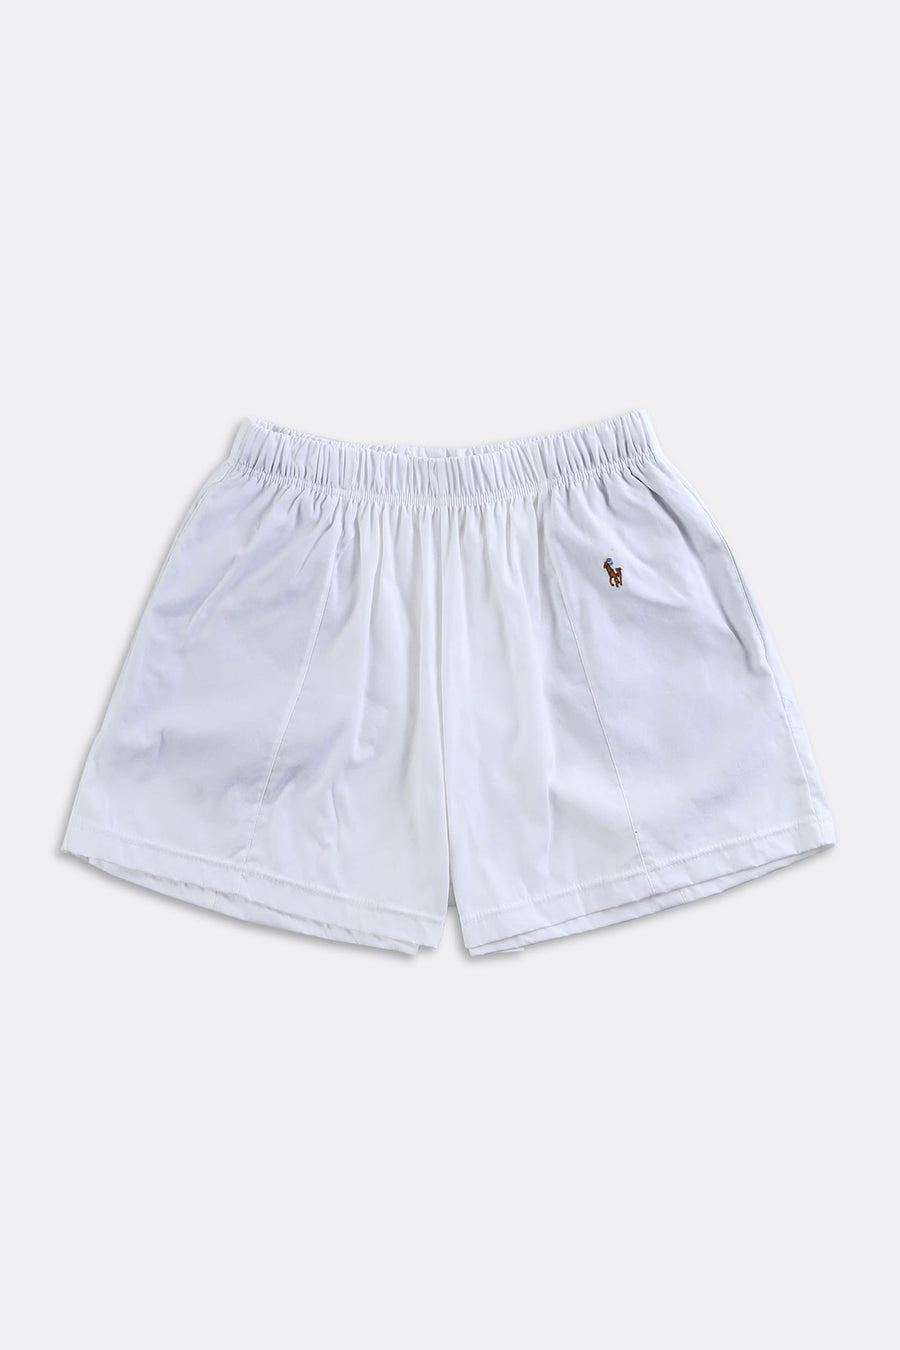 Rework Polo Oxford Mini Boxer Shorts - XS, S, M, L, XL